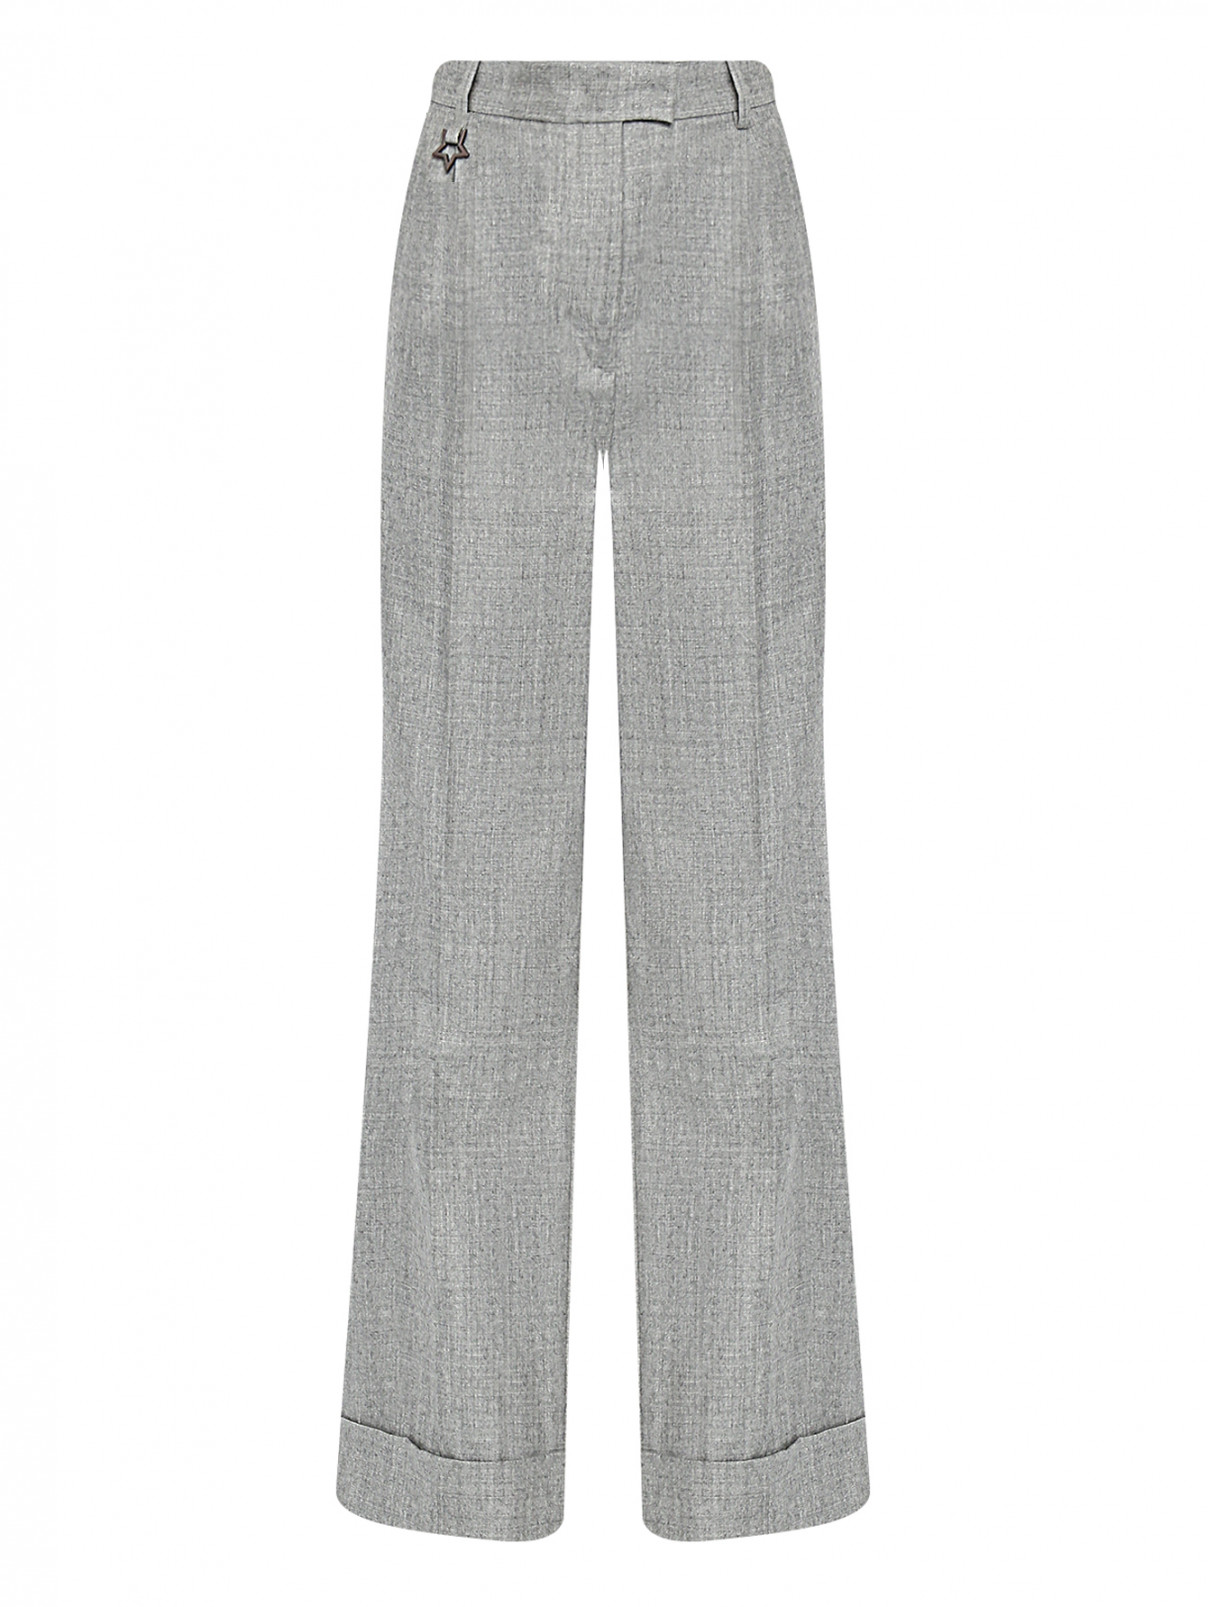 Широкие брюки из шерсти с карманами Lorena Antoniazzi  –  Общий вид  – Цвет:  Серый